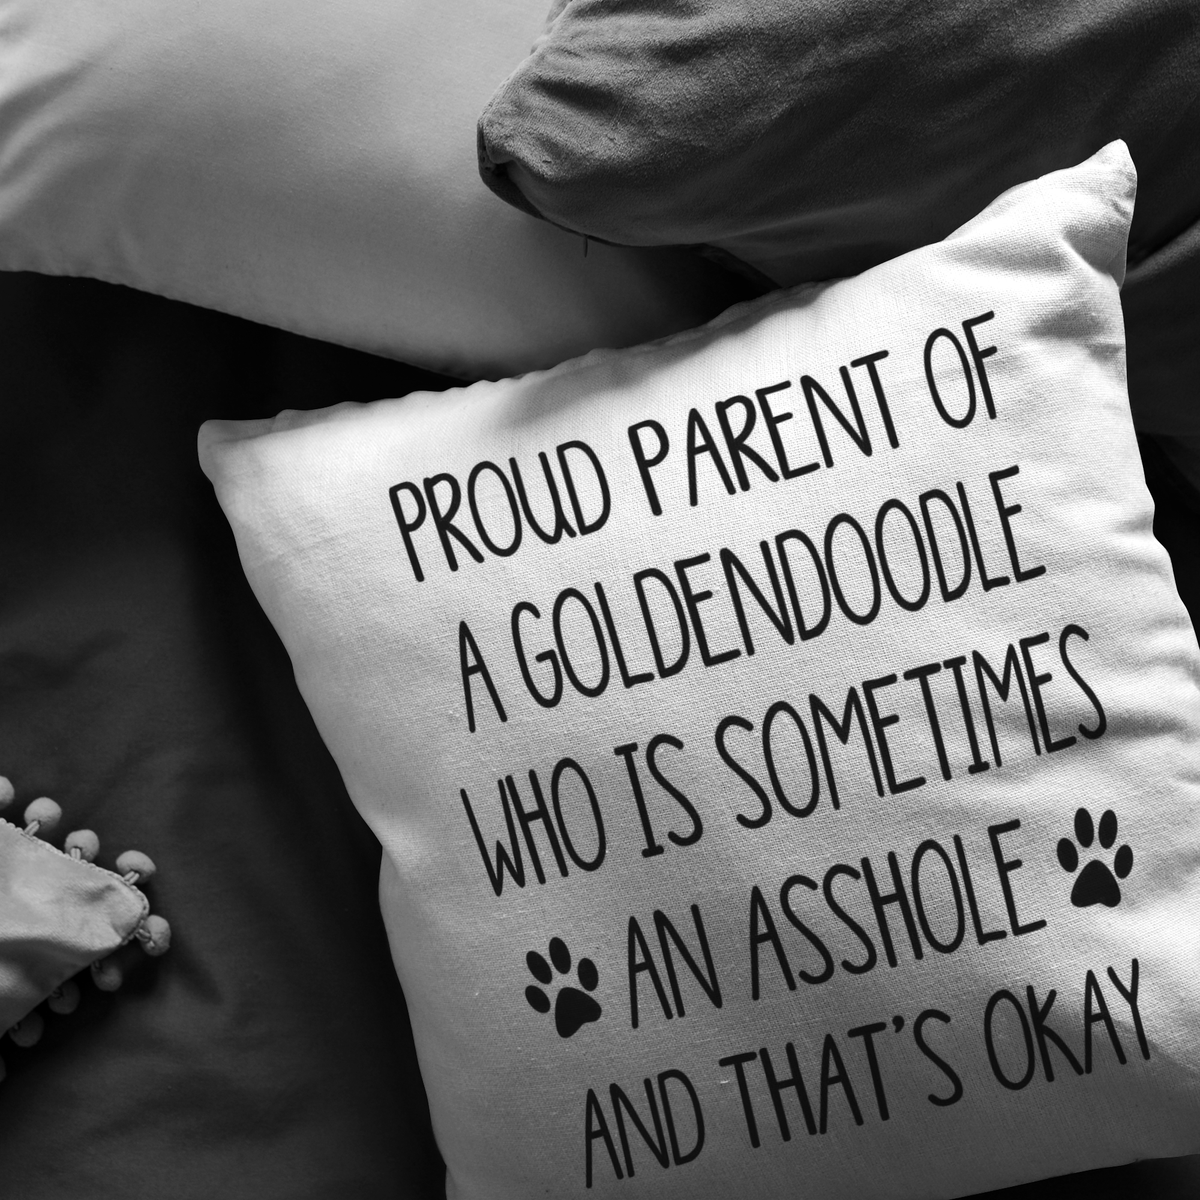 Proud Parent of a Goldendoodle Throw Pillow